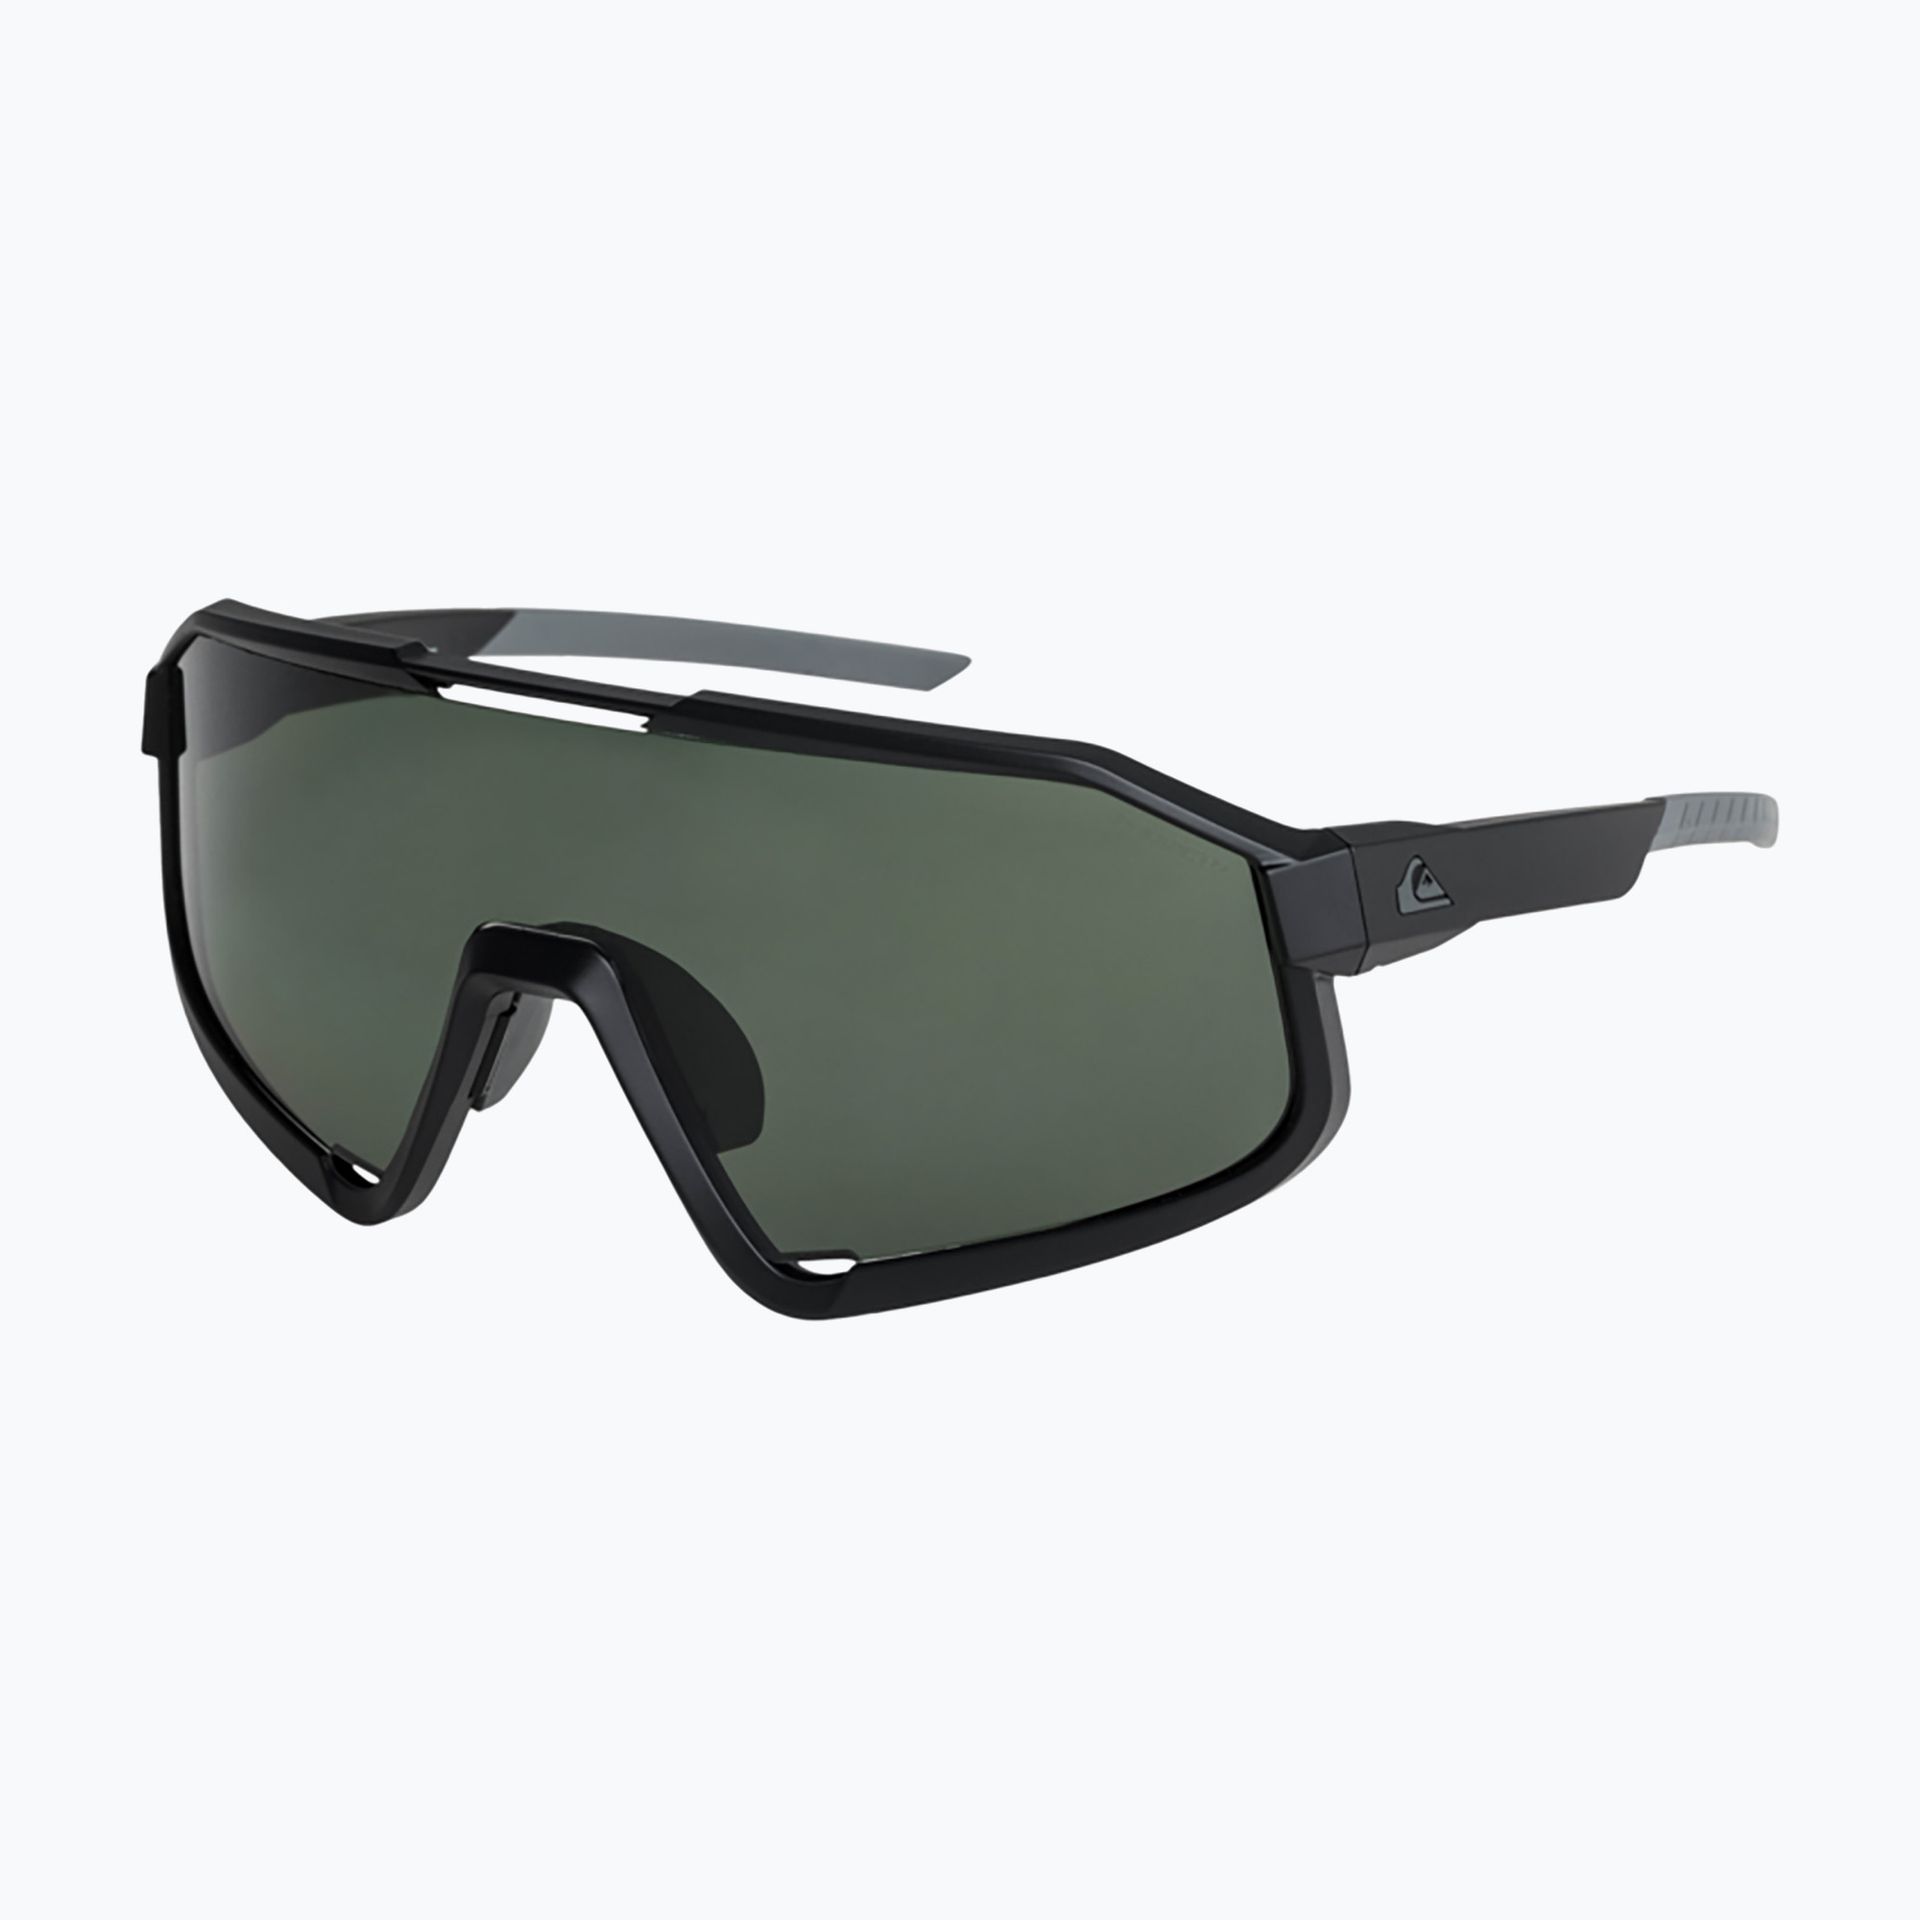 Okulary przeciwsłoneczne męskie Quiksilver Slash Polarised black green plz | WYSYŁKA W 24H | 30 DNI NA ZWROT